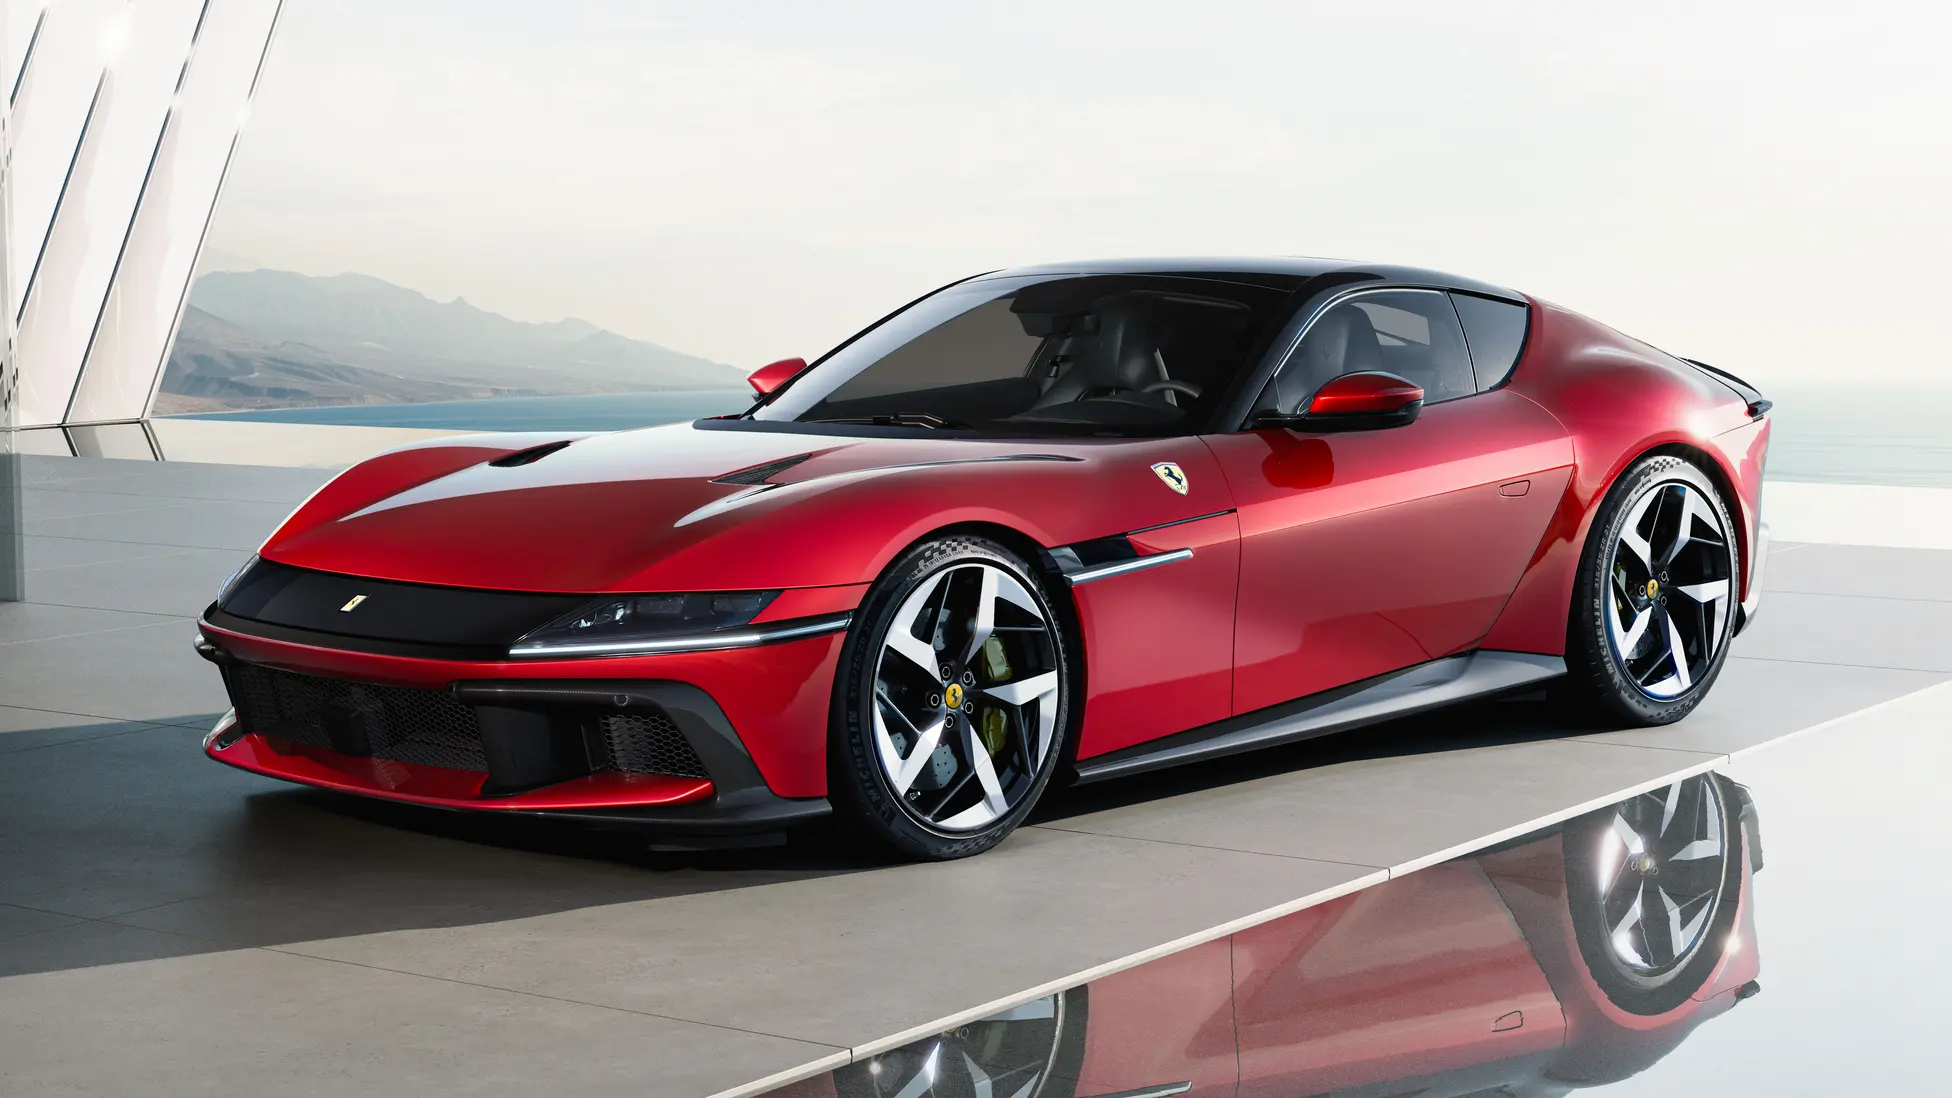 Ferrari 12 Cilindri unveiled Specs, Prices, Features, V12